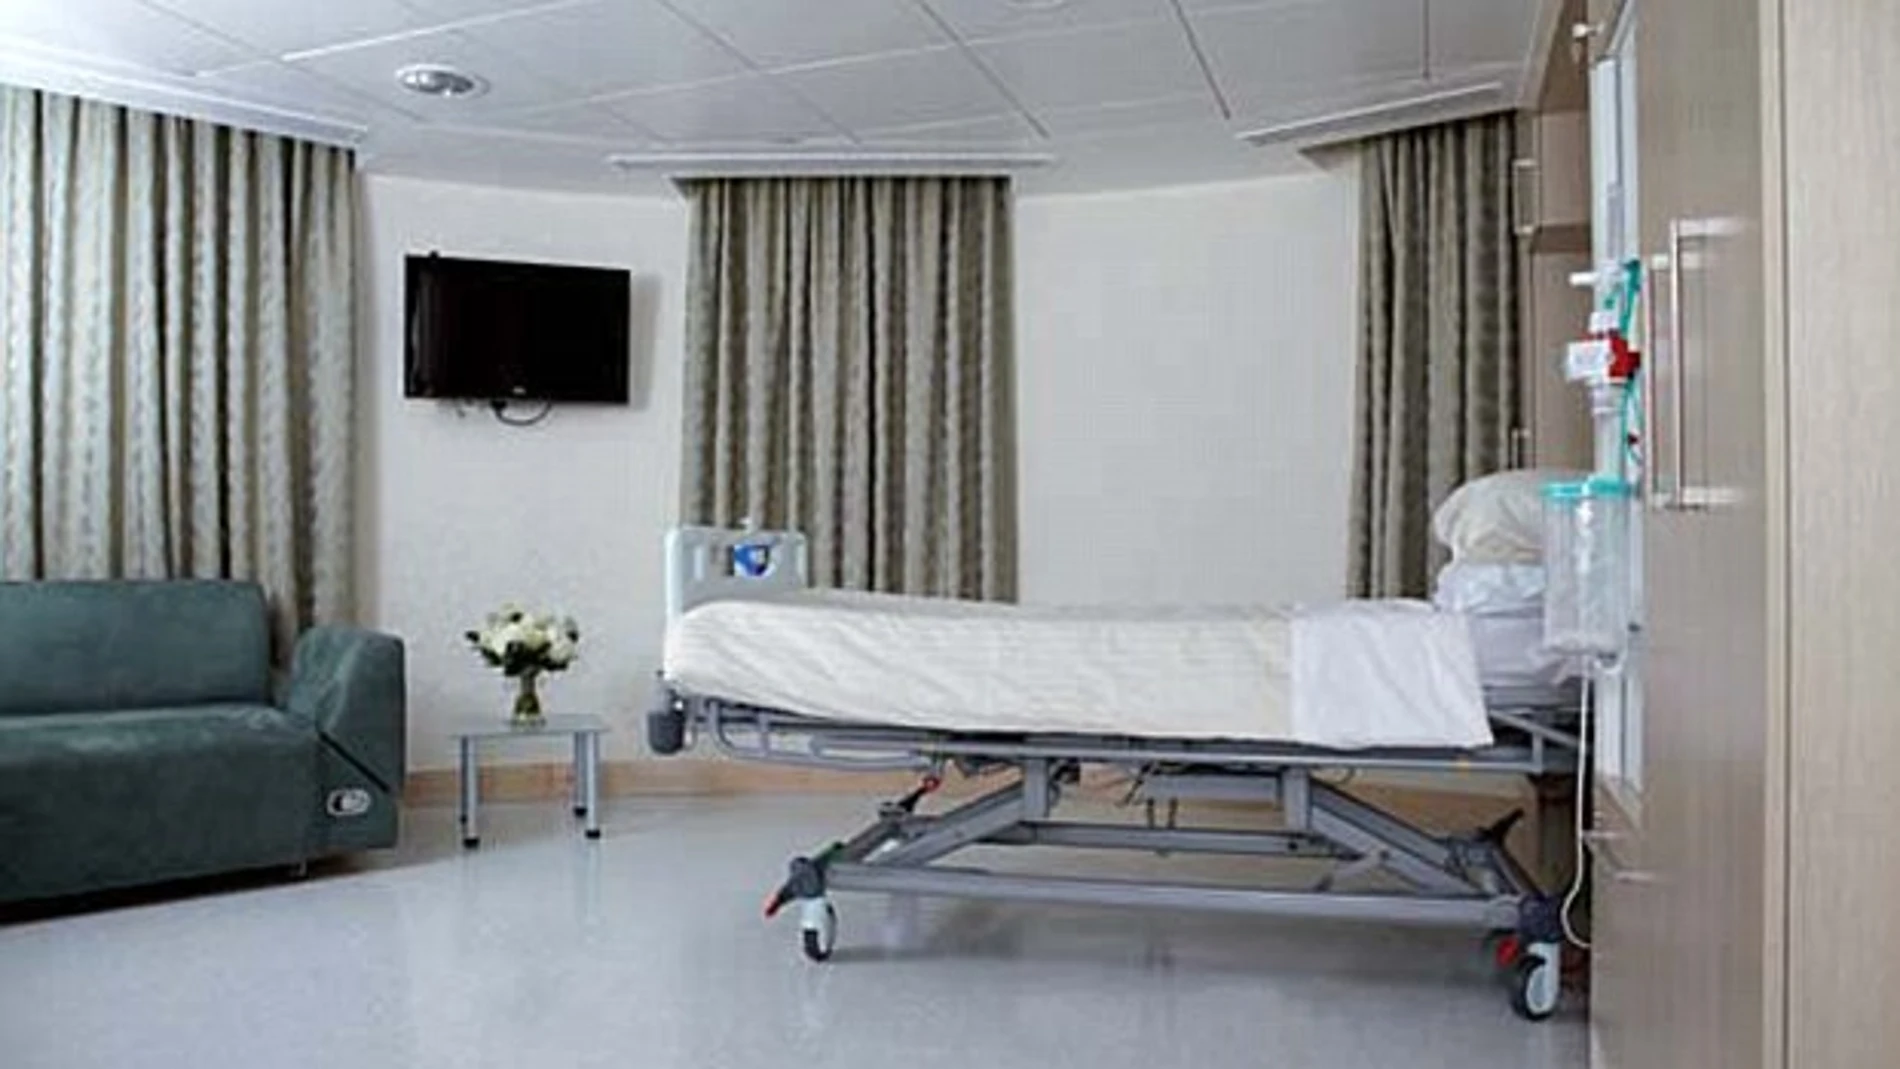 Los hospitales británicos perdieron 470.000 euros en 2013 por los robos